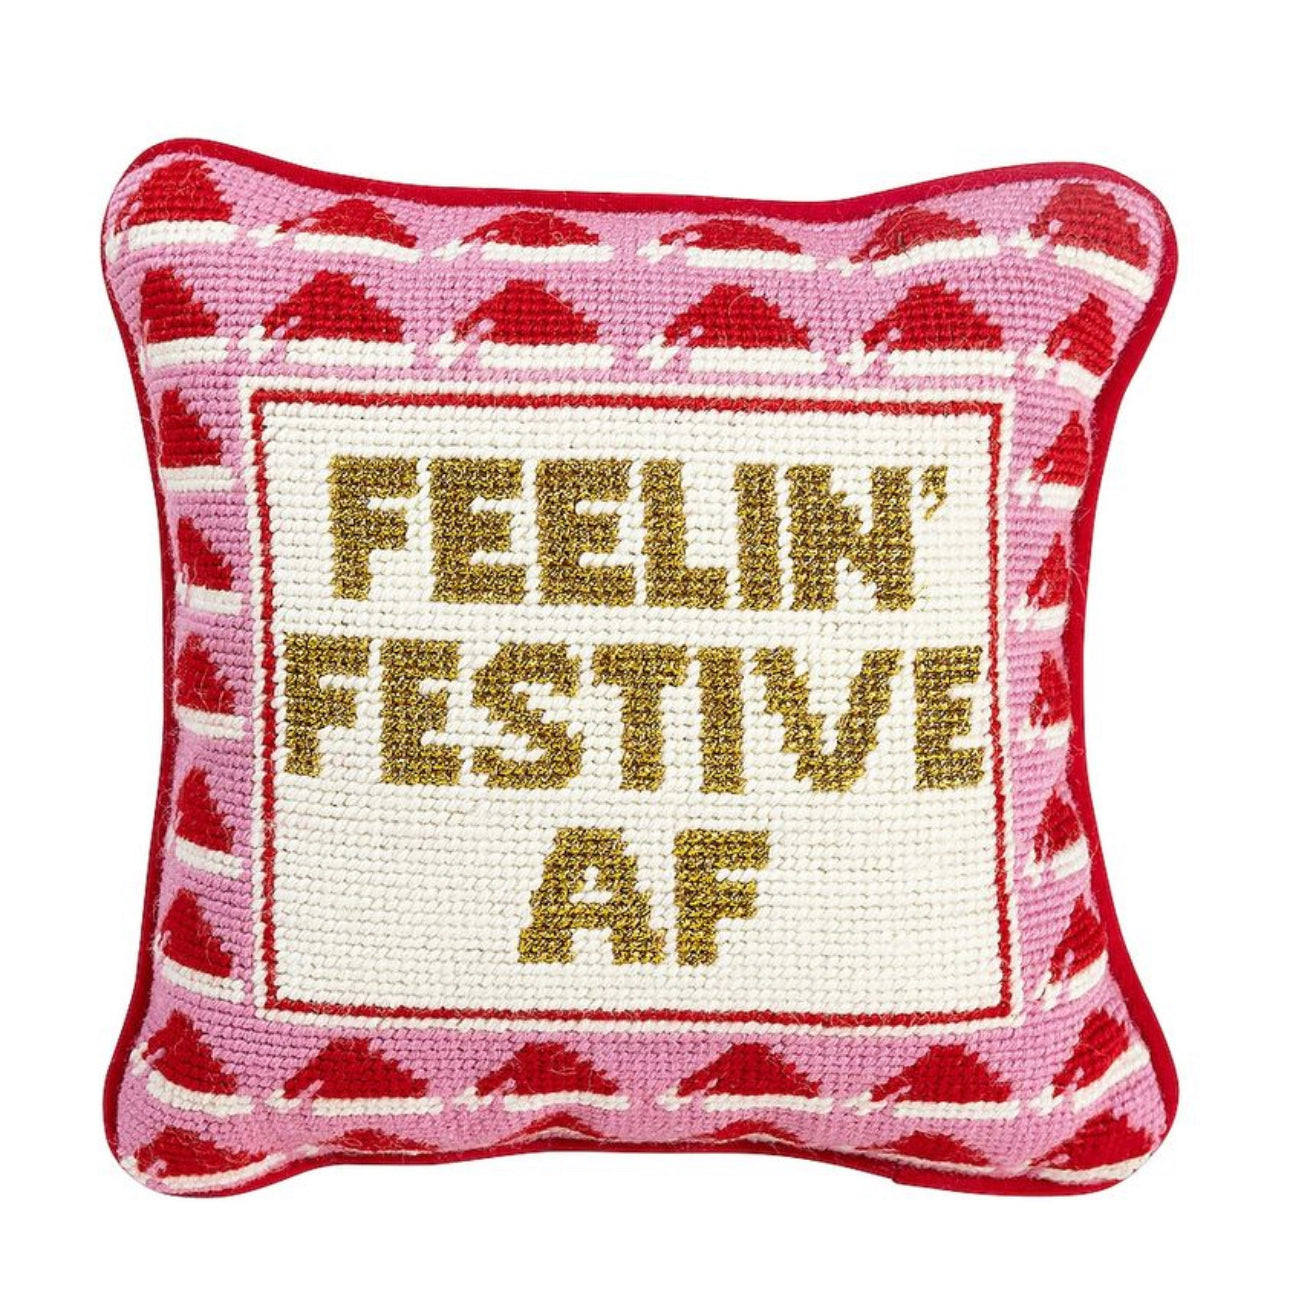 Feelin’ Festive AF